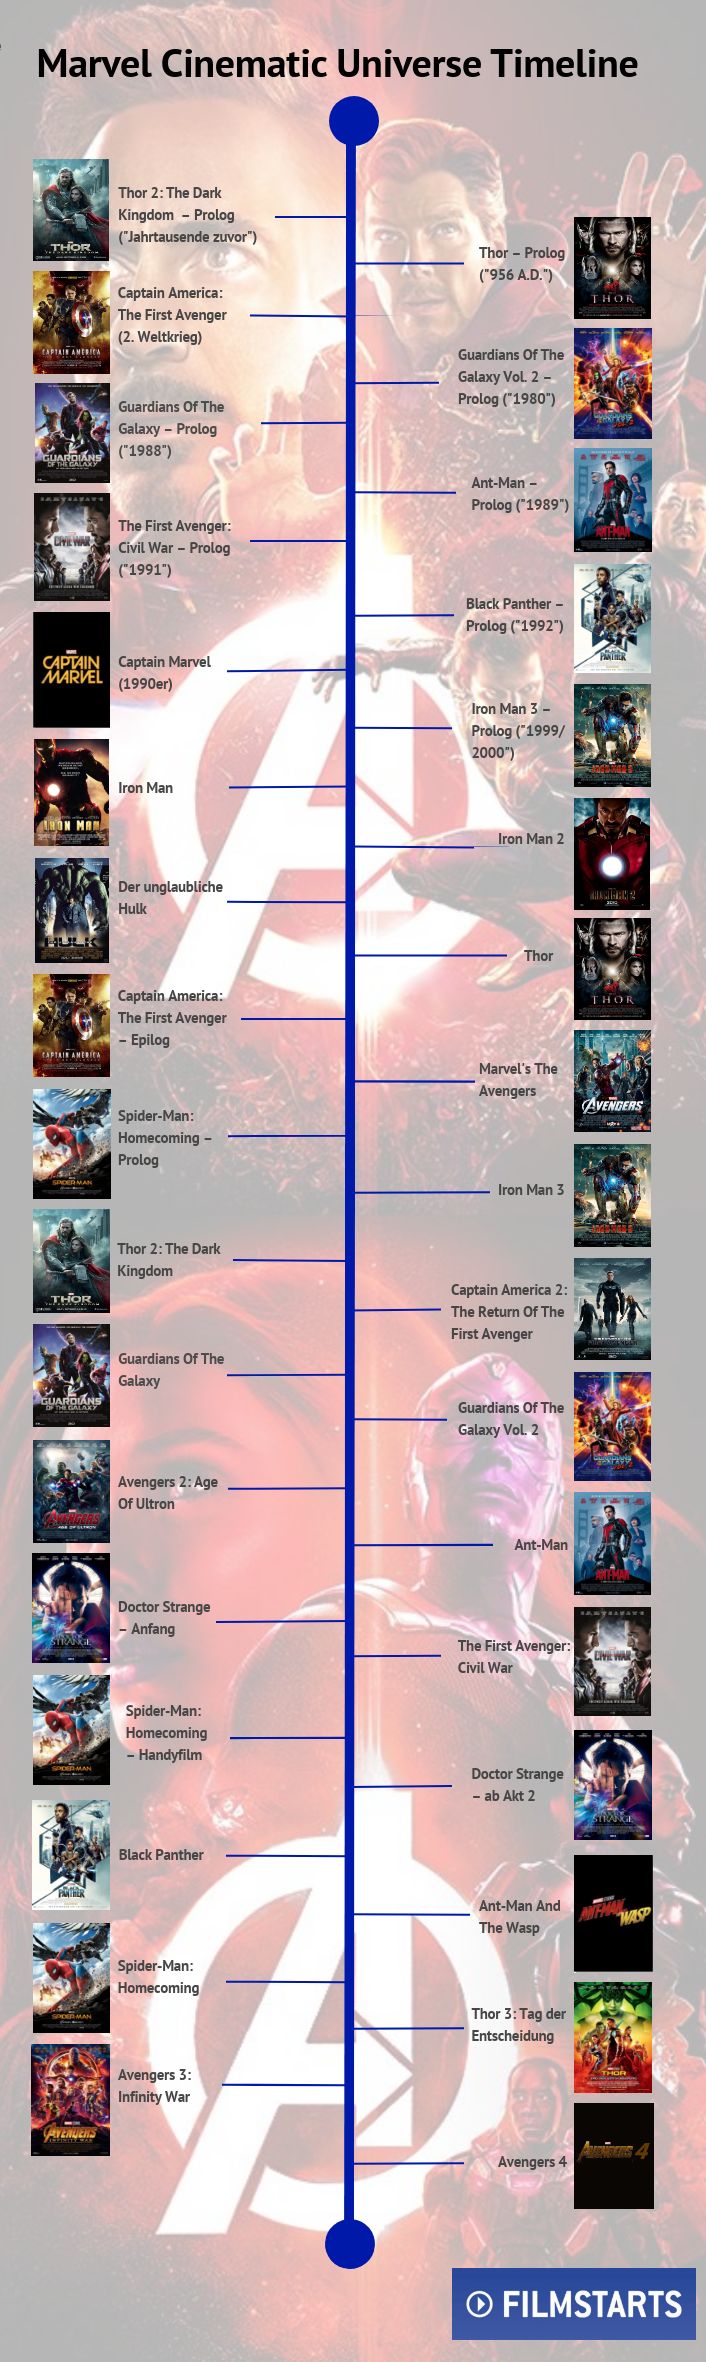 Avengers Filme Chronologisch